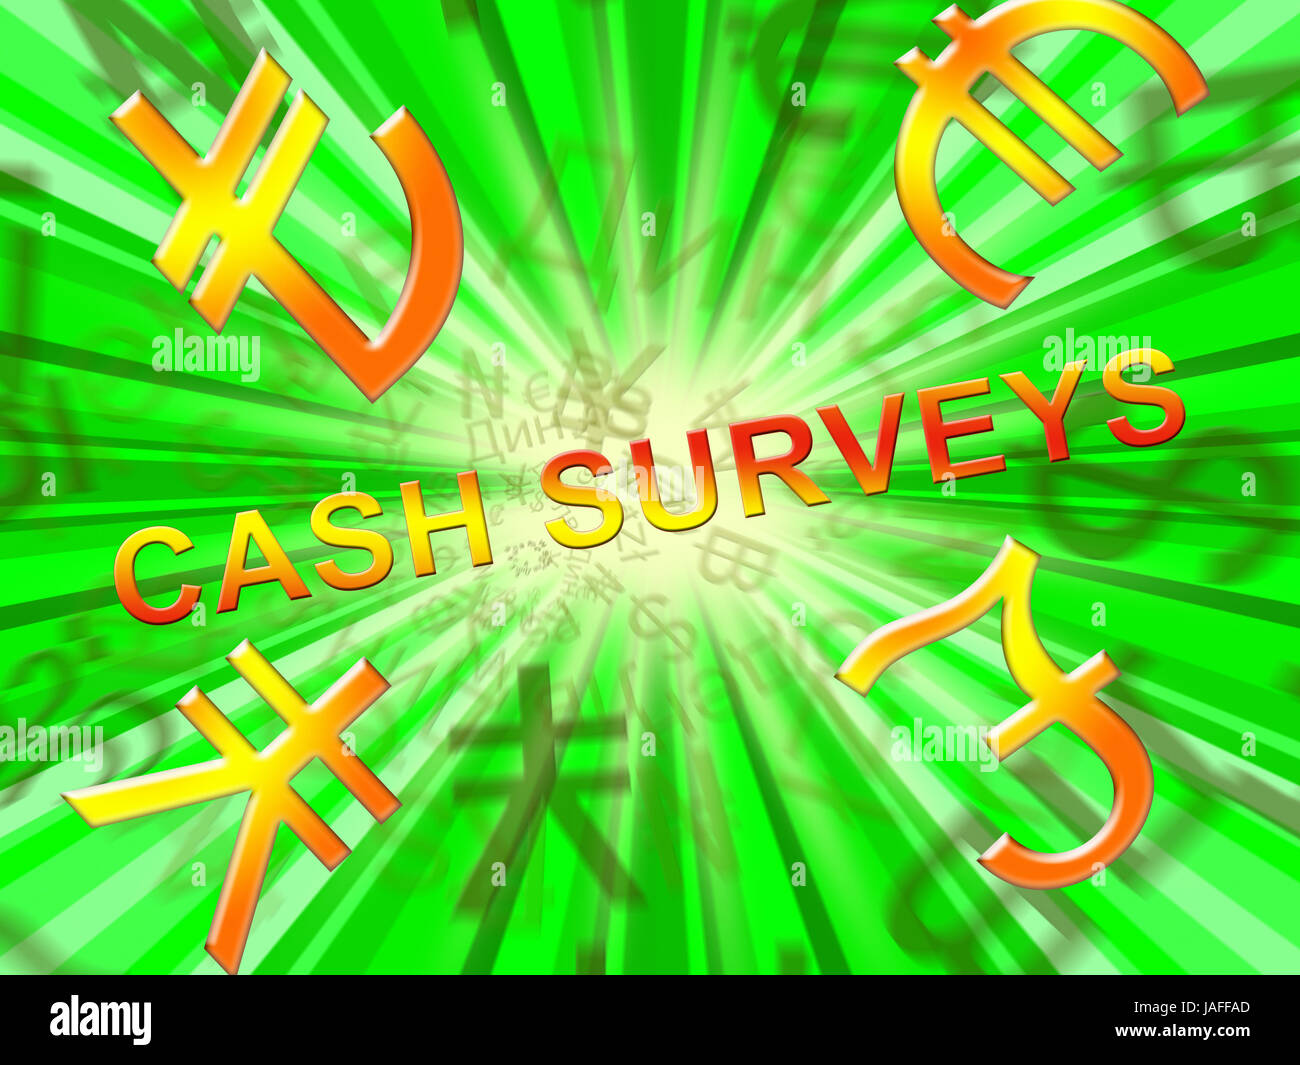 Cash Surveys Symbols Means Paid Survey 3d Illustration Stock Photo